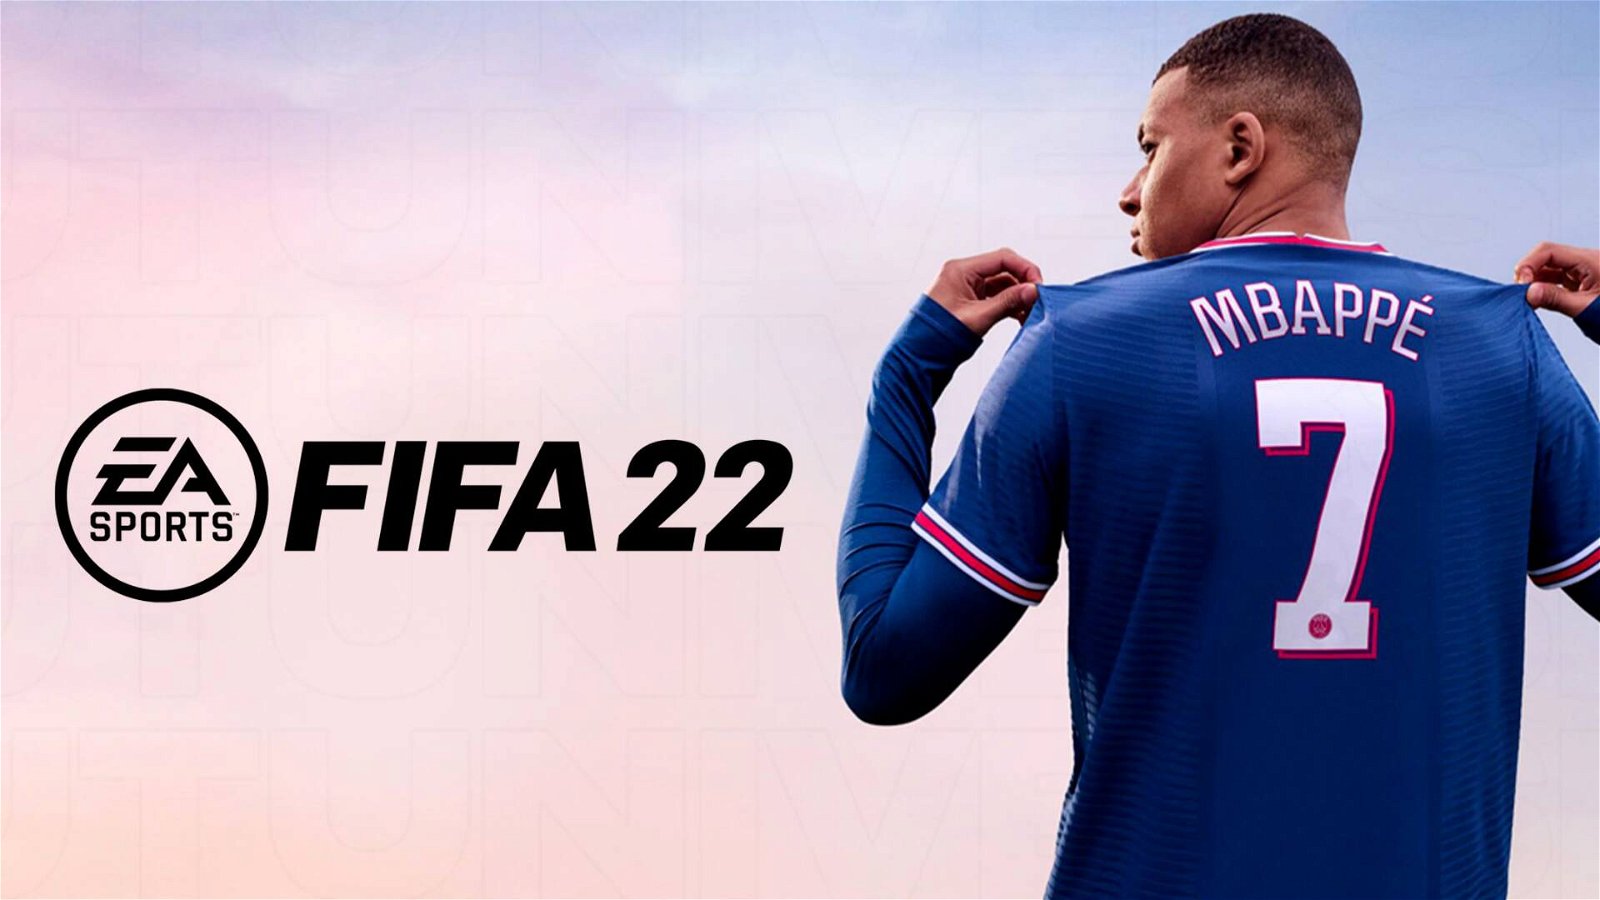 Immagine di FIFA 22 per PS4 al prezzo più basso di sempre!